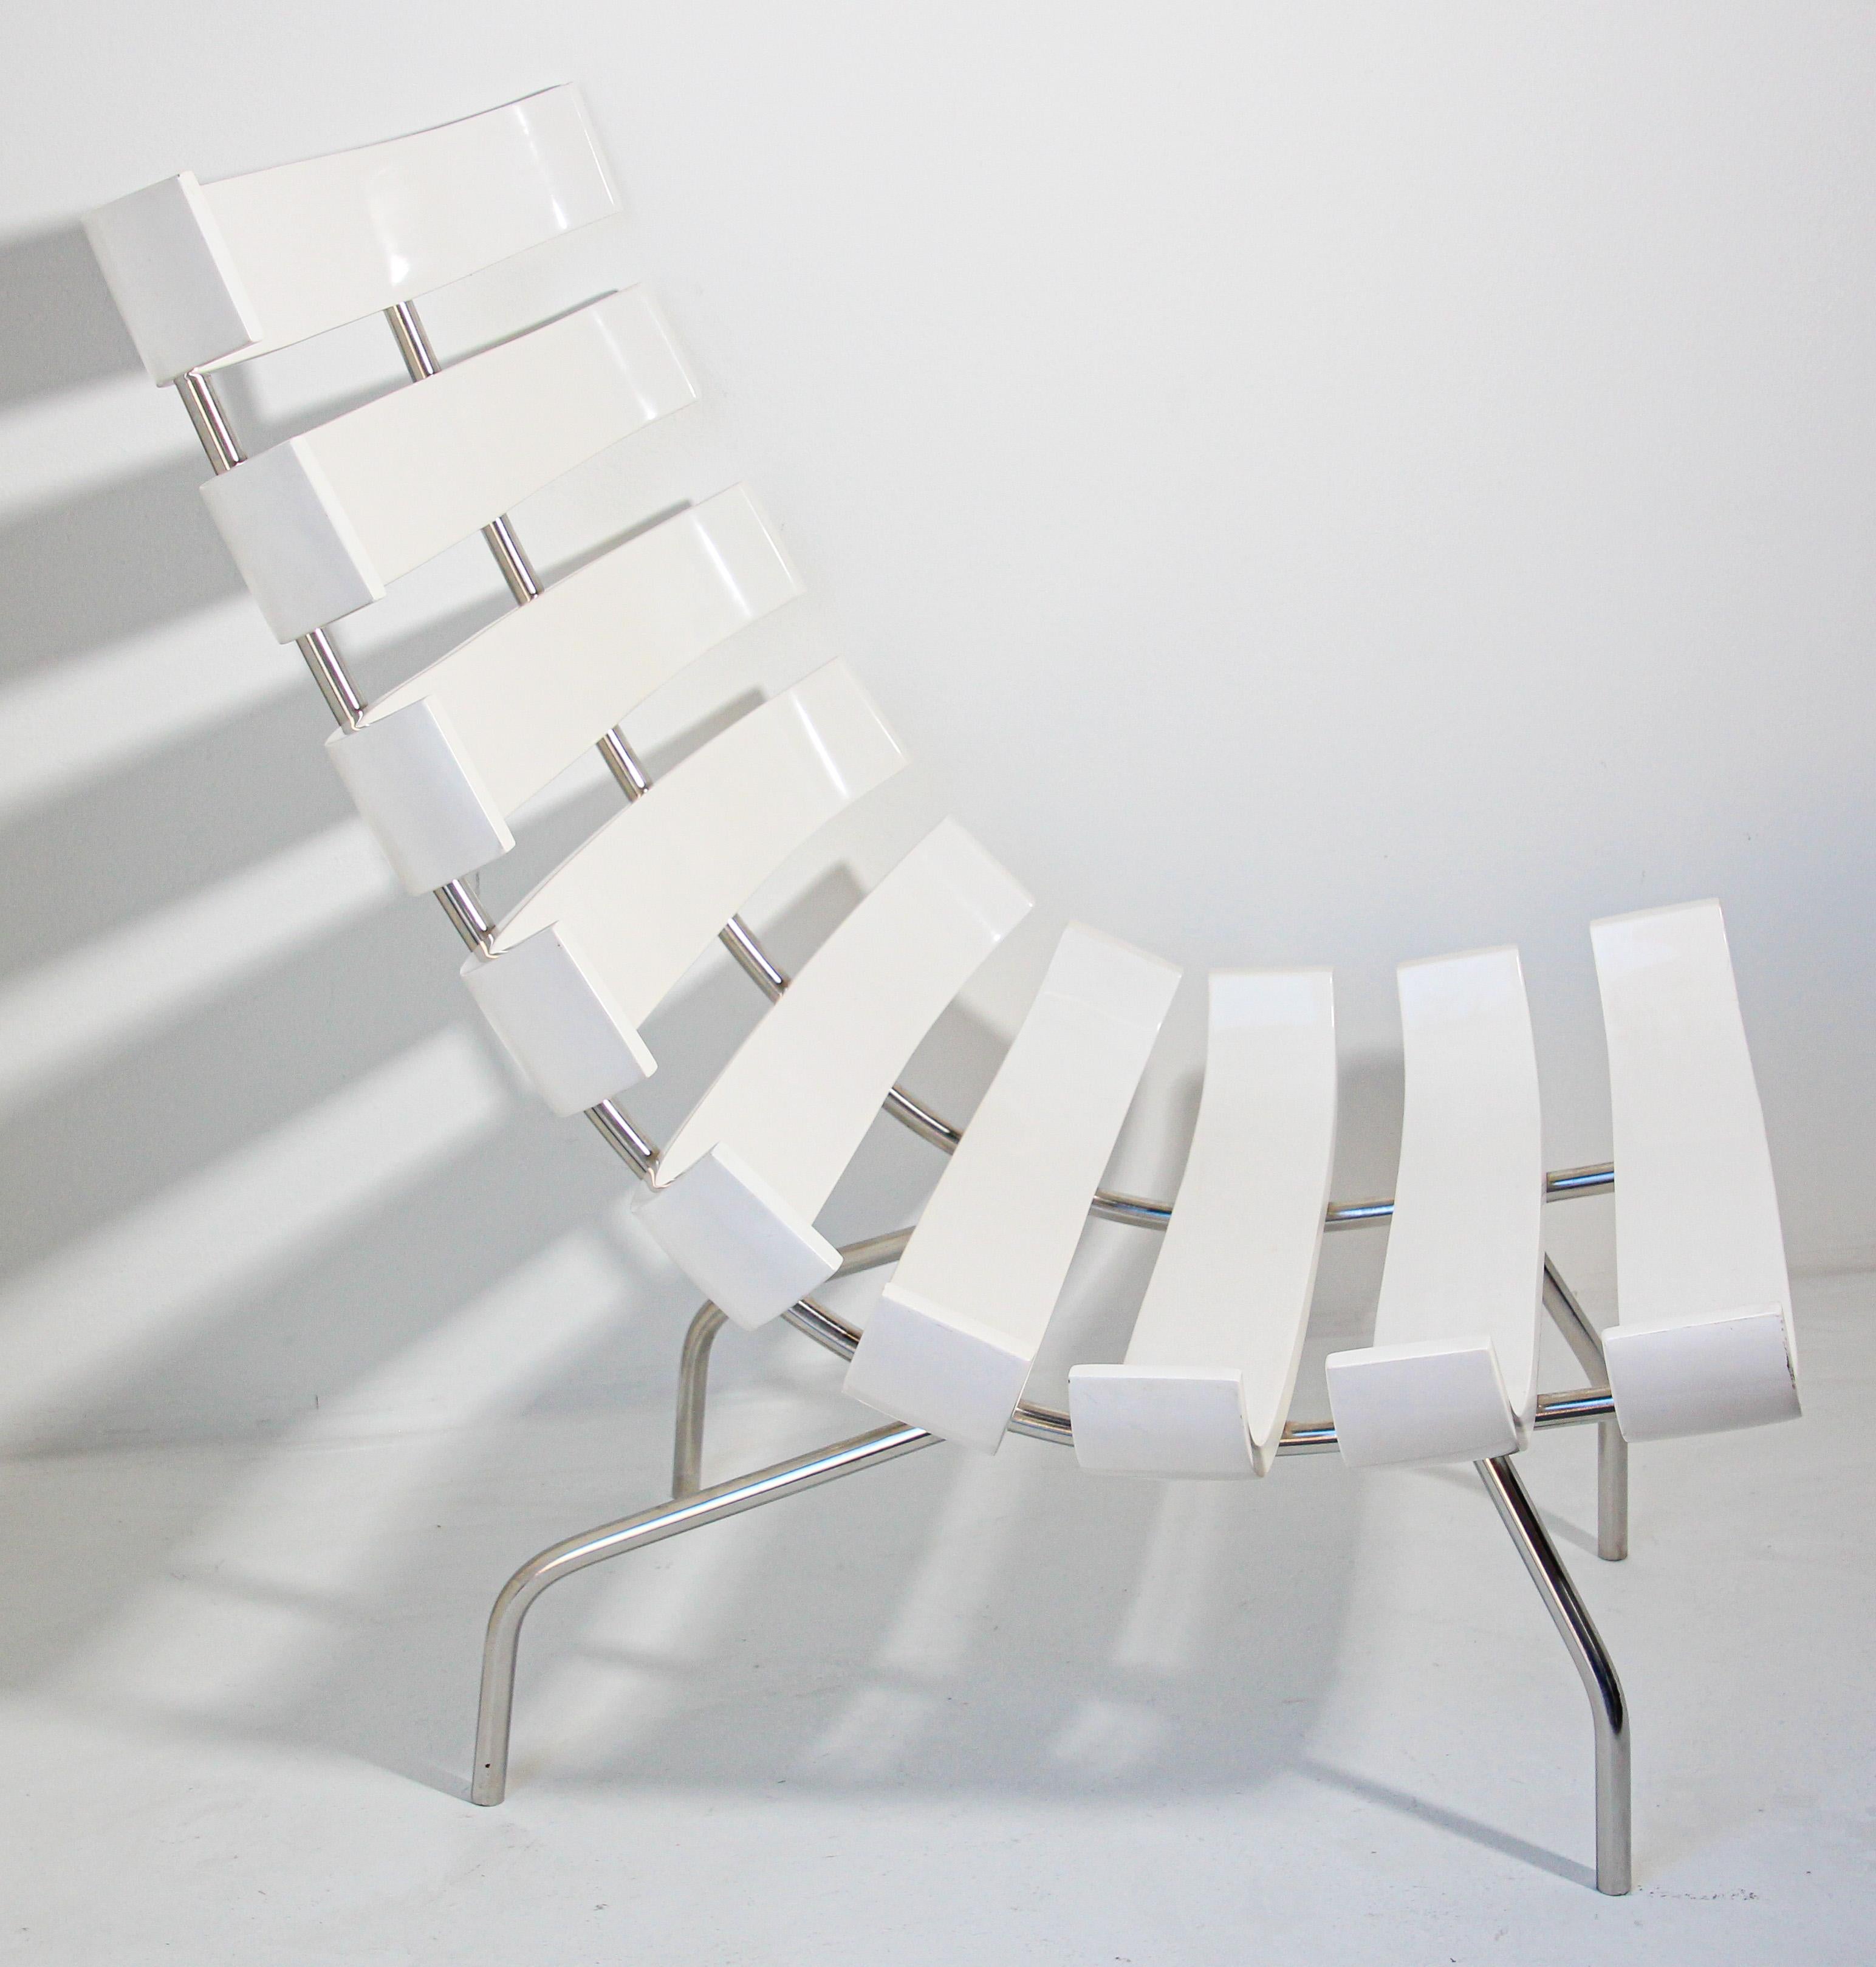 Martin Eisler Carlo Hauner Loungesessel im Costela-Stil in Weiß.
Der Entwurf von Martin Eisler aus dem Jahr 1952 ist eine Ikone des brasilianischen Designs der 1950er Jahre.
Martin Eisler und Carlo Hauner Costela Lounge Chair, der Costela Stuhl war